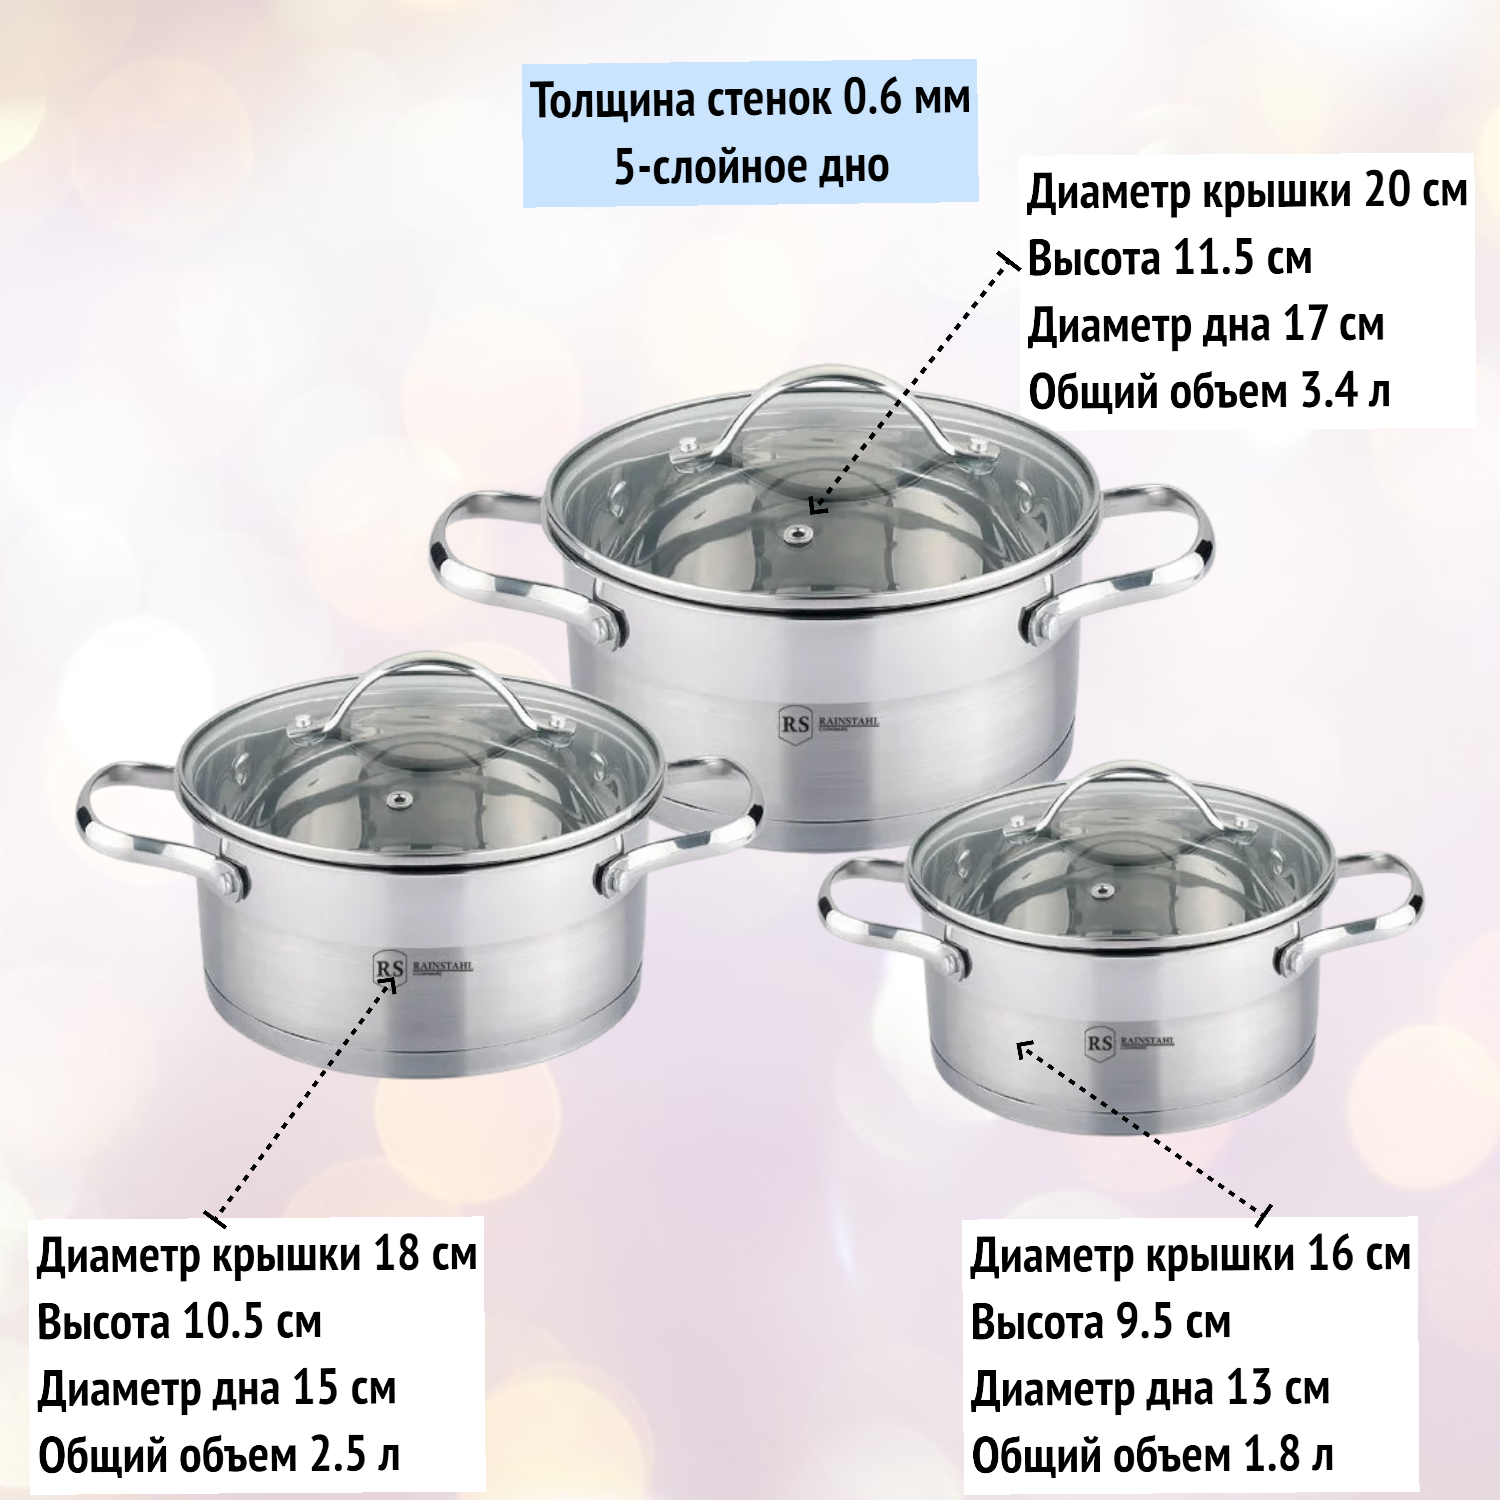 Набор посуды 6 предметов (1.8 л, 2.5 л, 3.4 л) из нержавейки Rainstahl RS/CW 1644-06